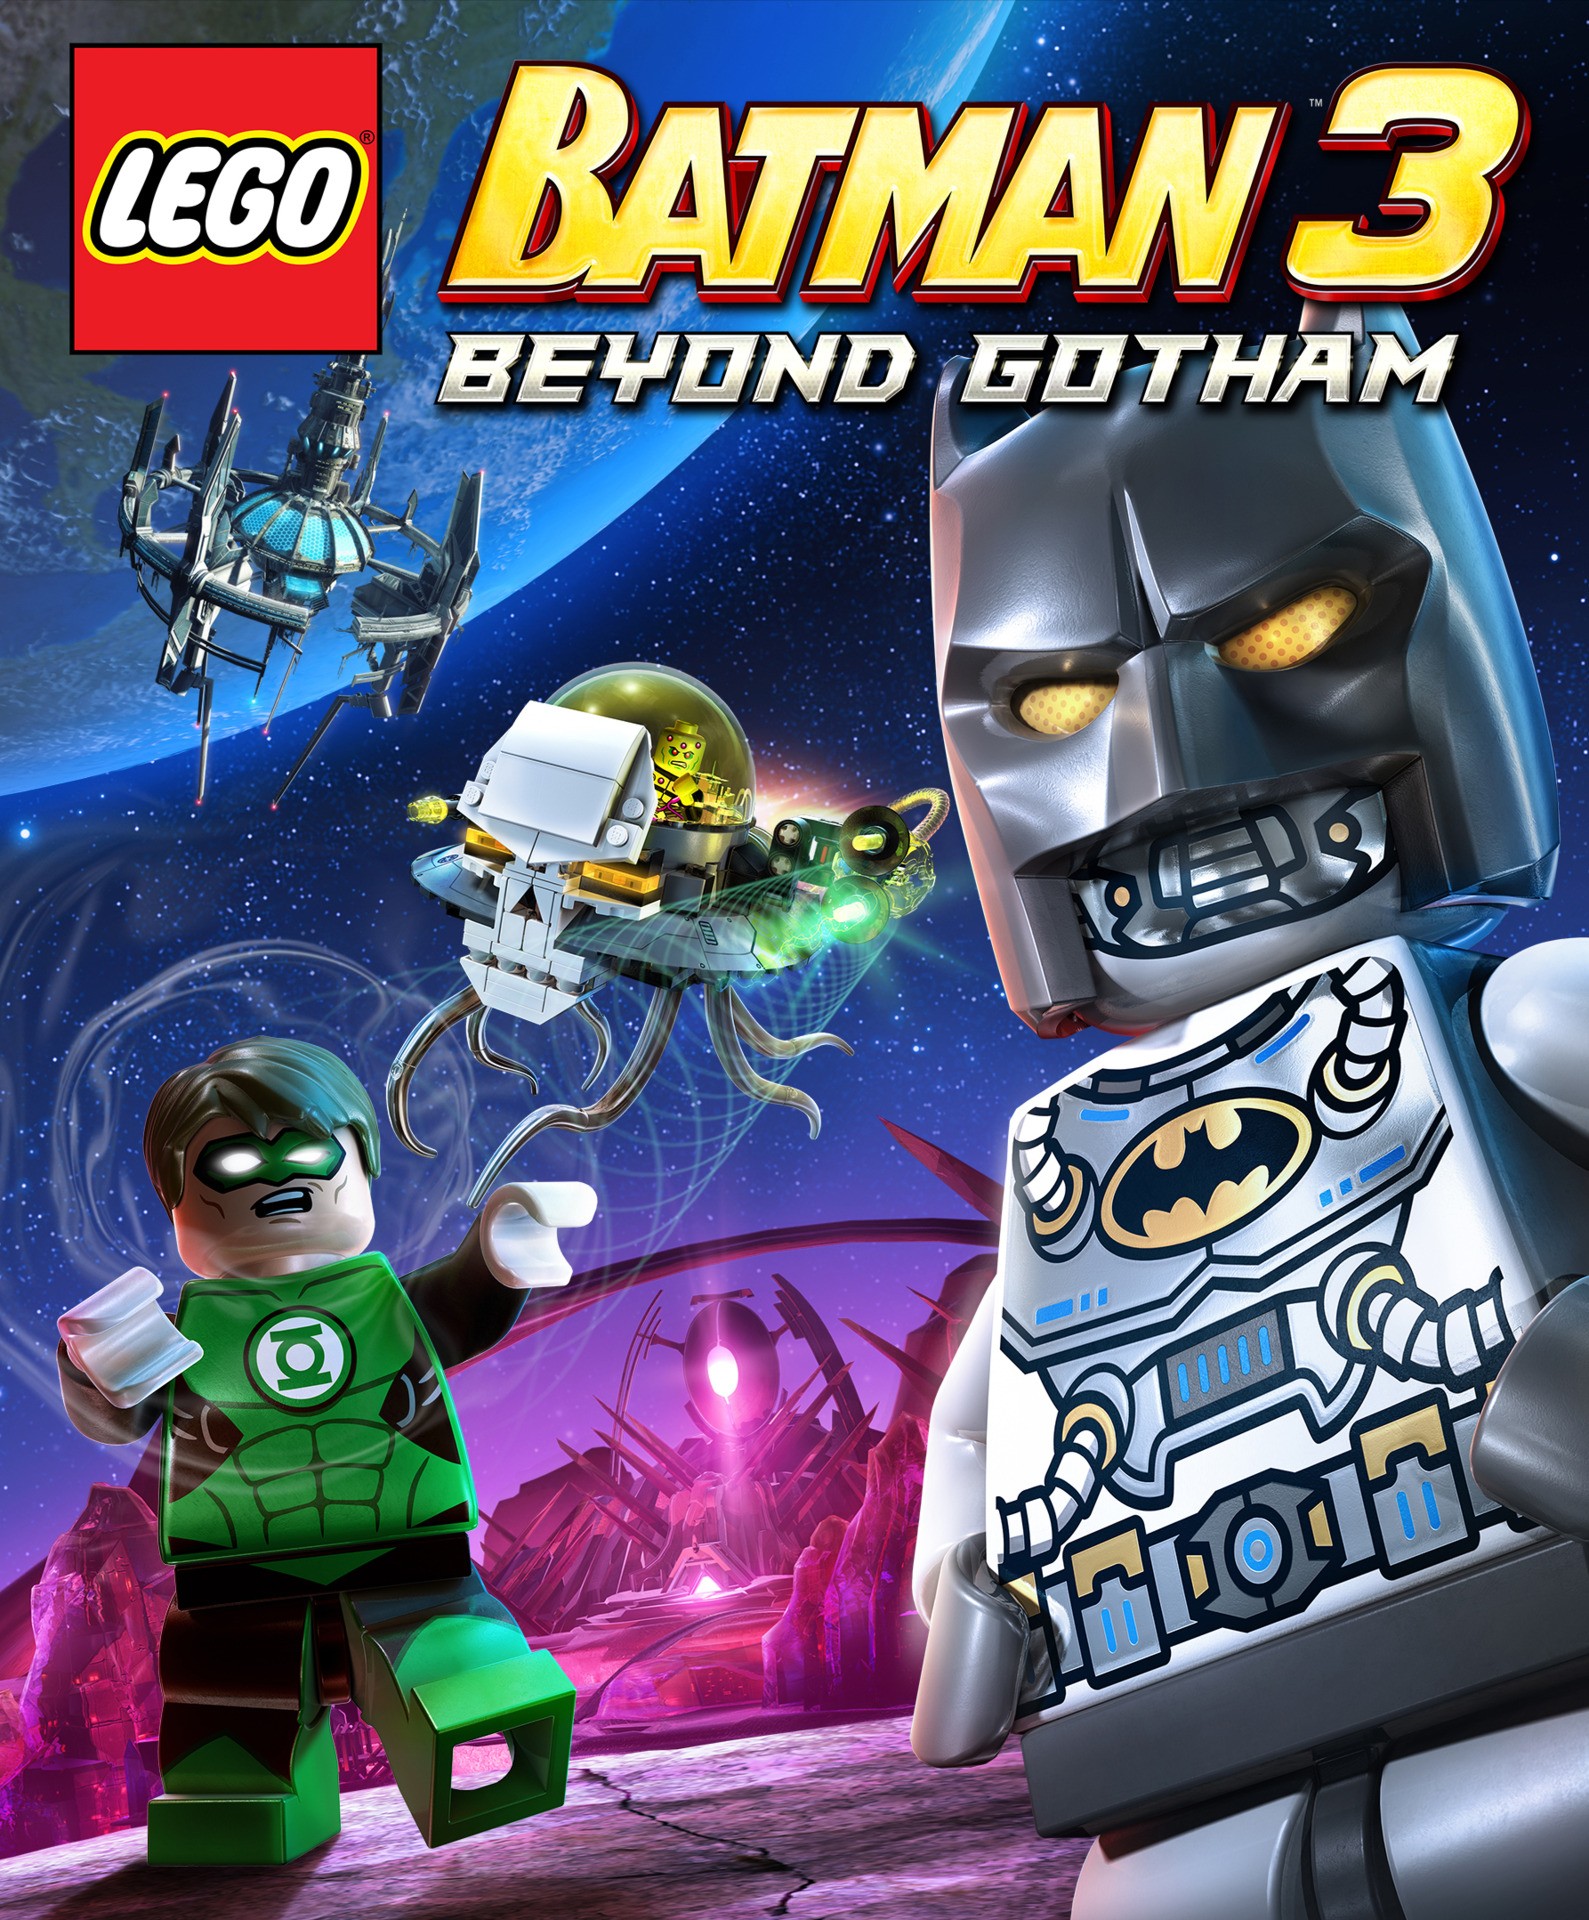 LEGO Batman 3: Beyond Gotham Video Shows Adam West, Troy Baker, More Voice  Cast